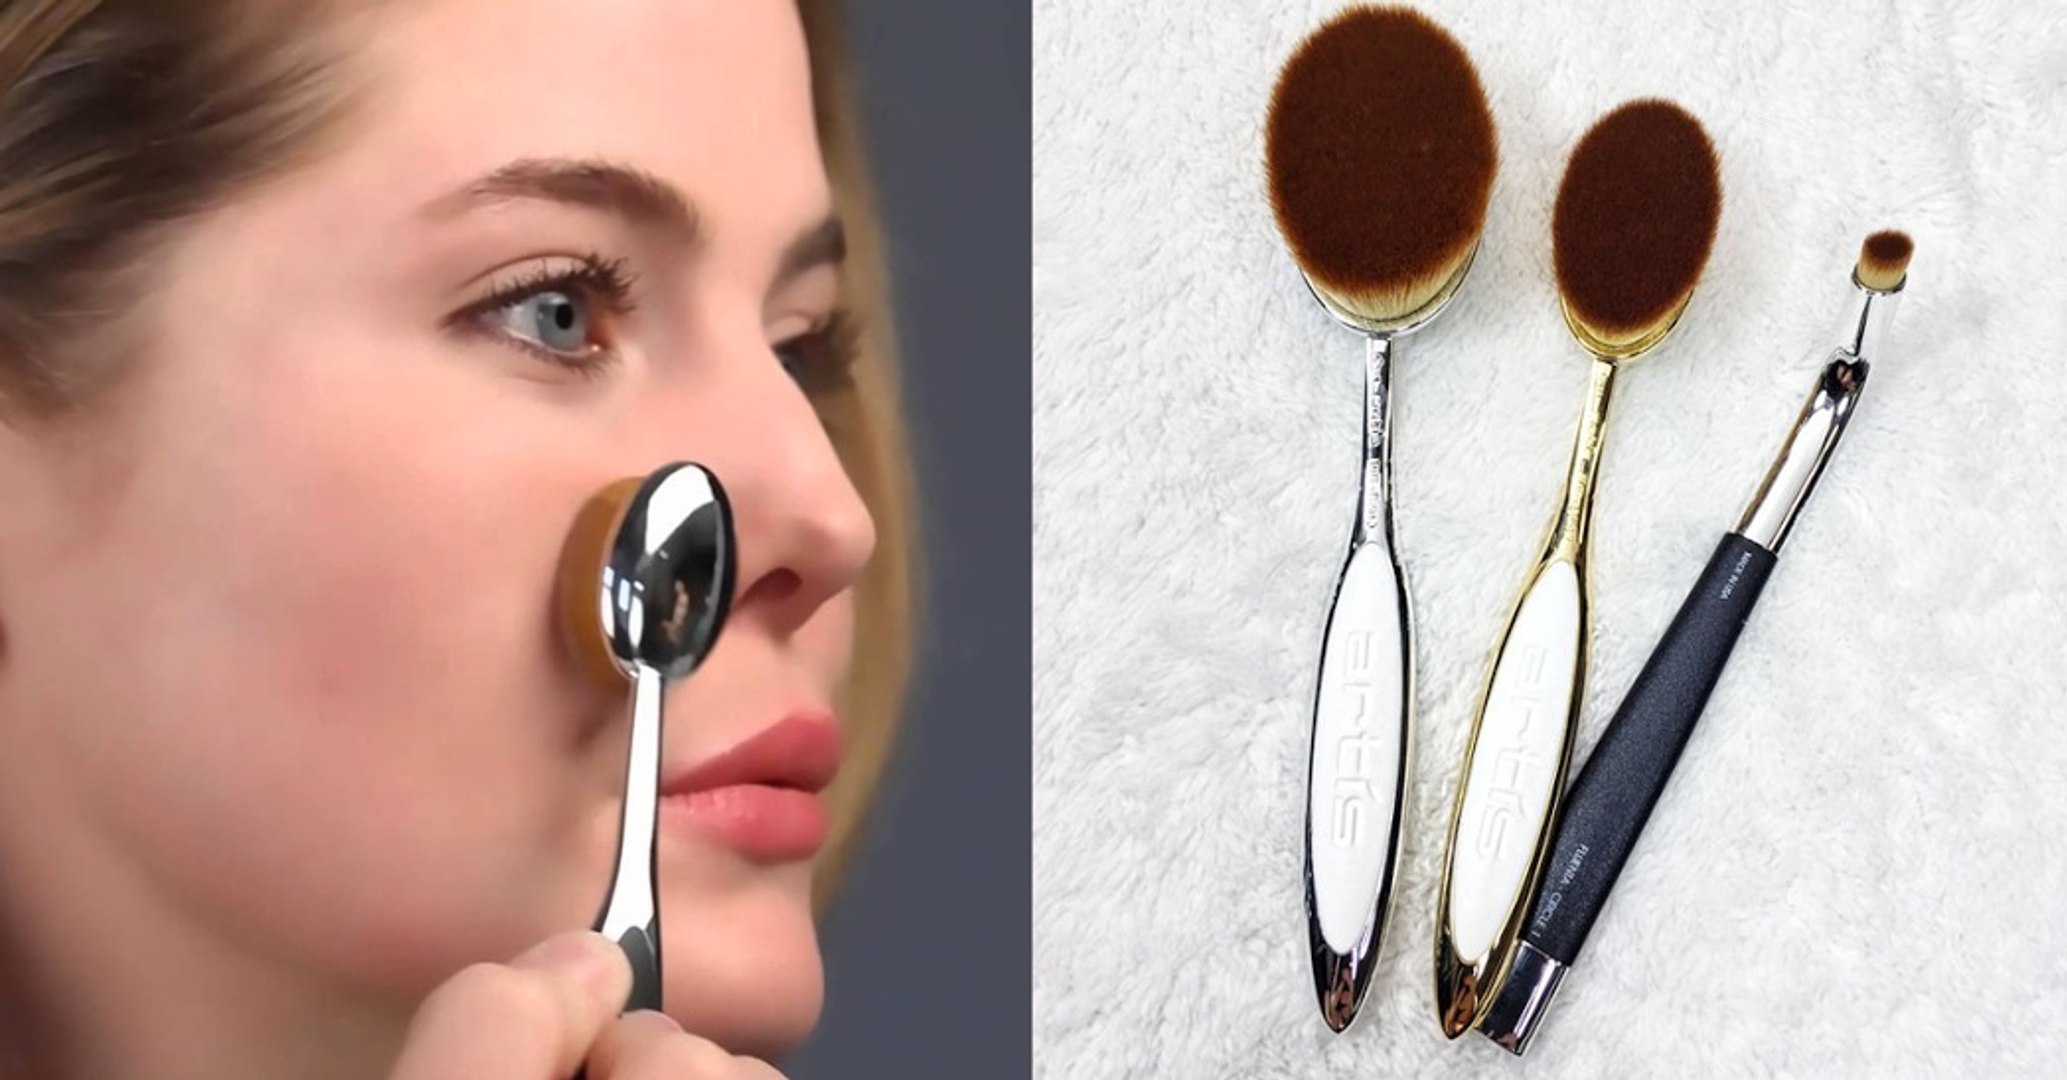 Artis Brush : les pinceaux-brosses à maquillage du futur ! - Vidéo  Dailymotion